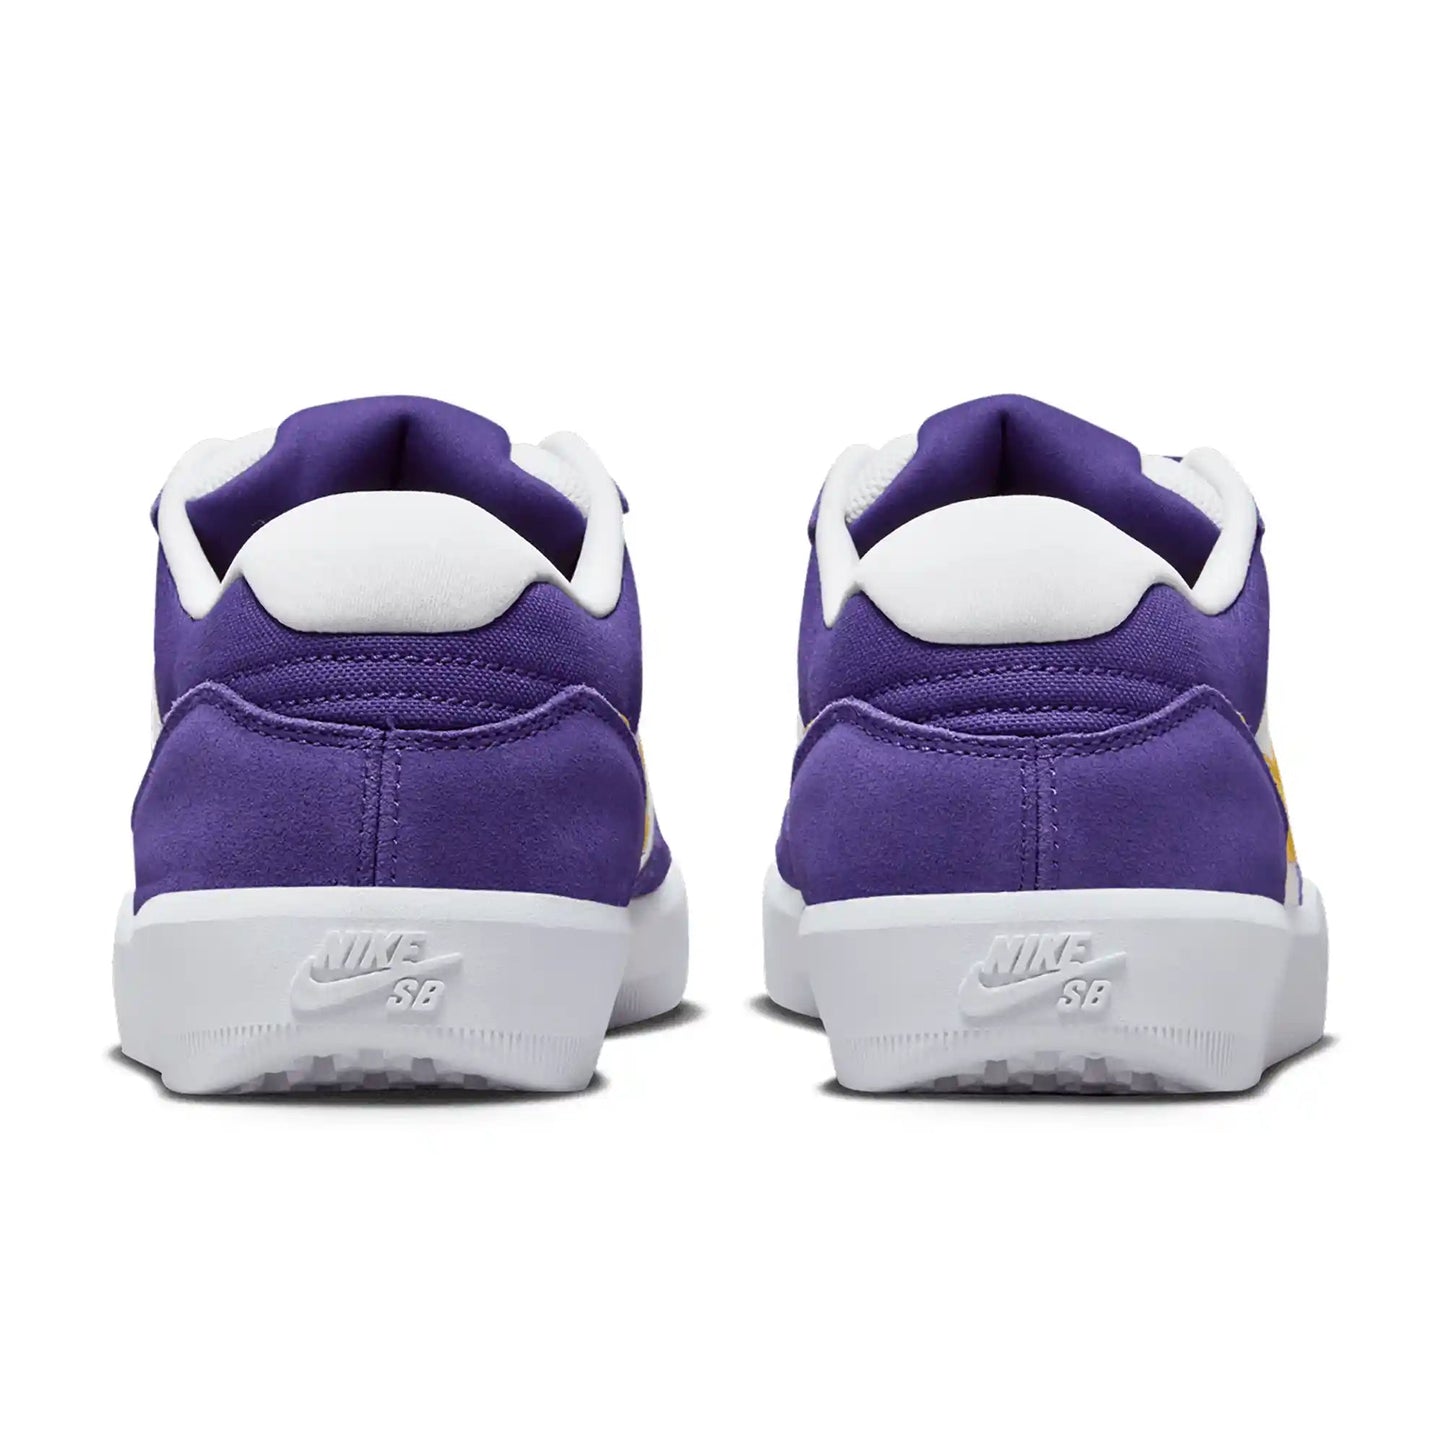 Nike SB Force 58, court purple/amarillo-white-white - Tiki Room Skateboards - 7